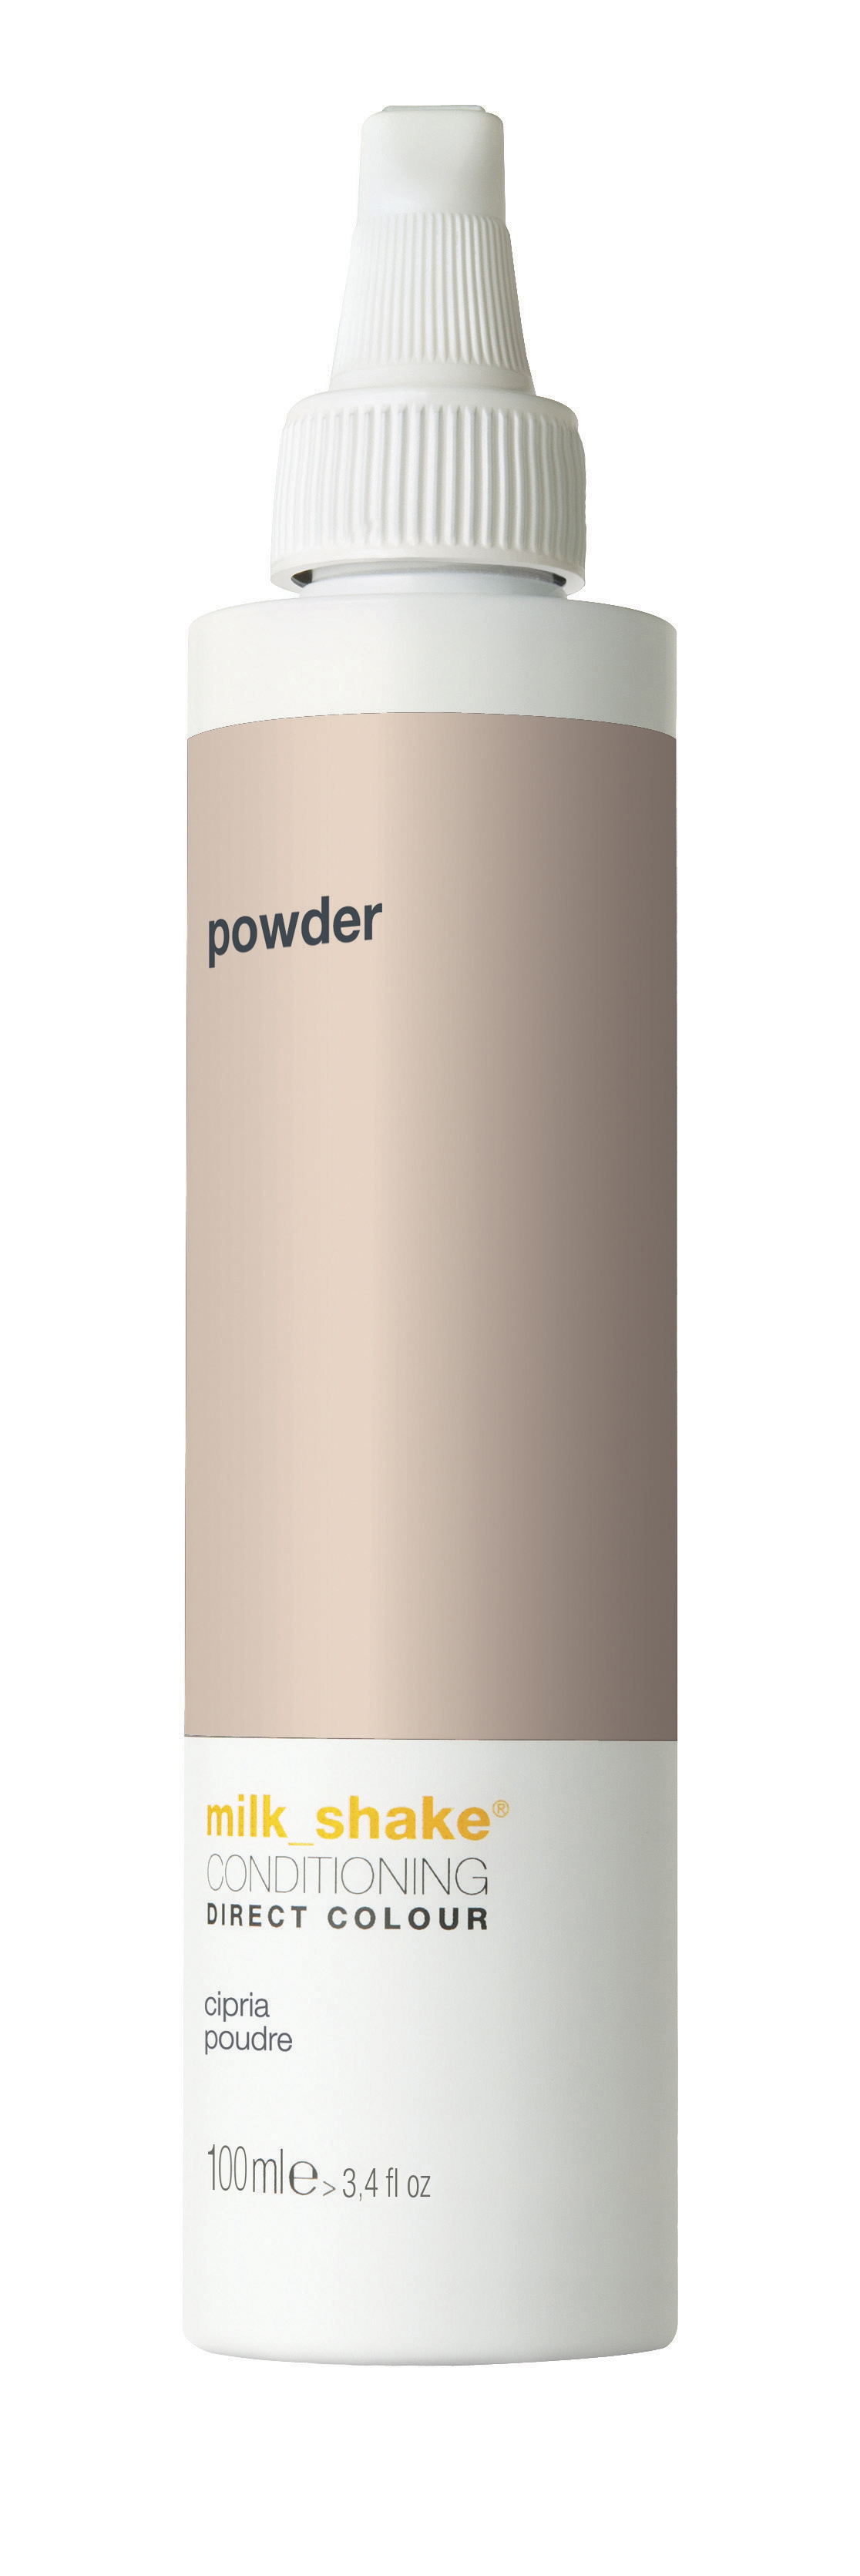 milk_shake - Direct Color 100 ml - Powder - Skjønnhet